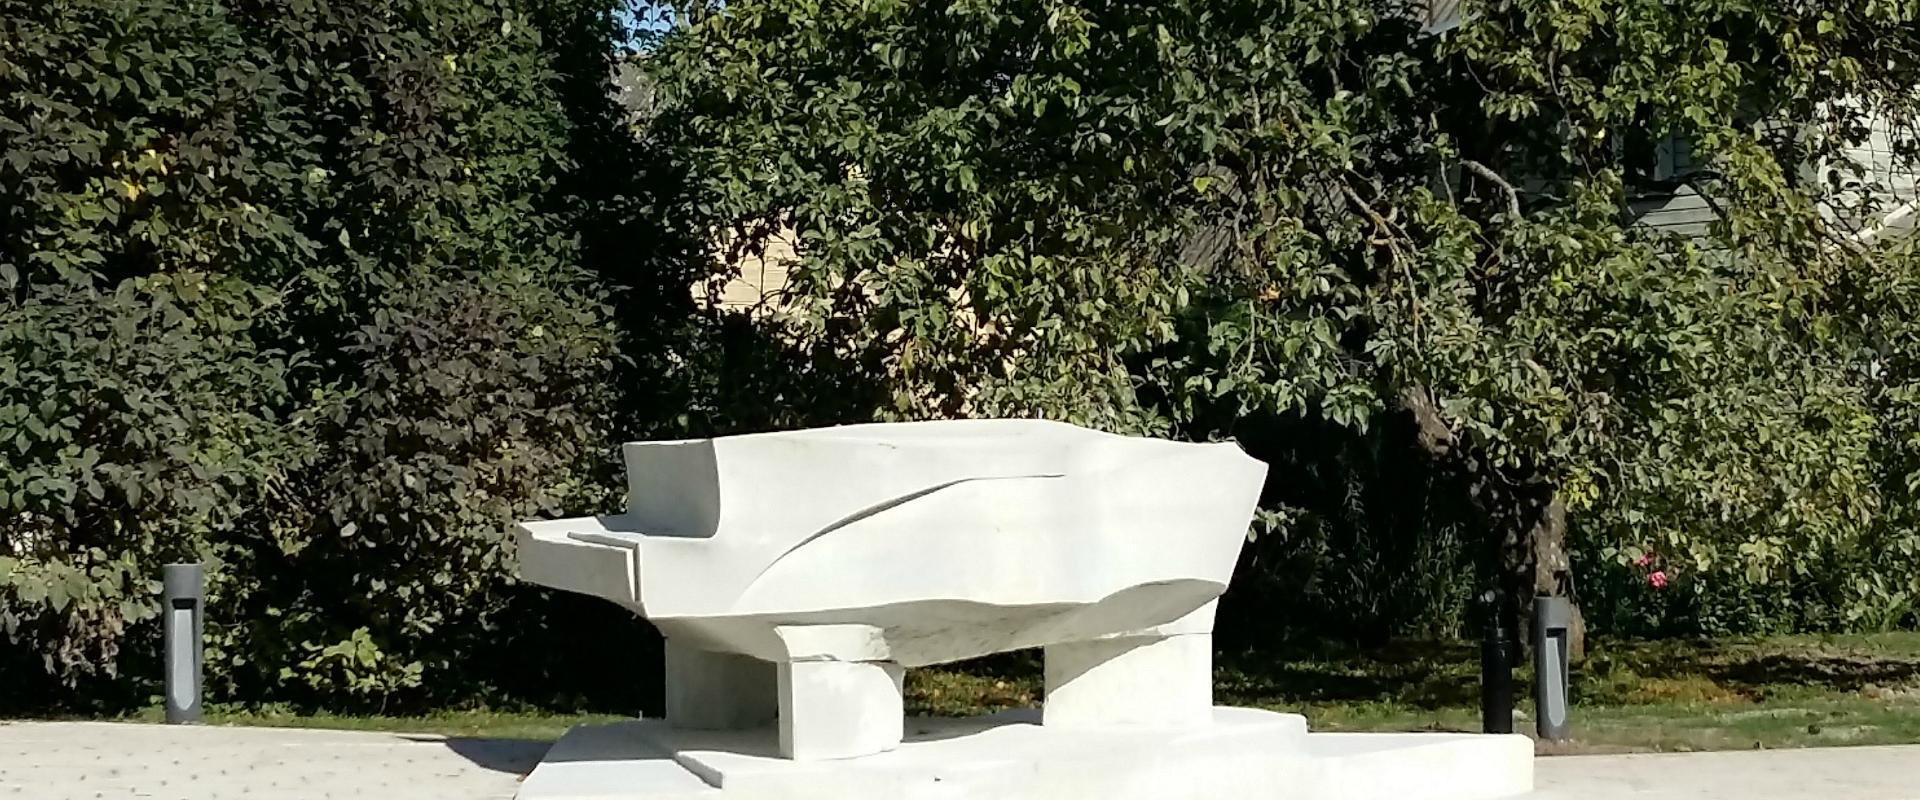 Musikgarten in Paide, der den Geburtsort von Arvo Pärt kennzeichnet